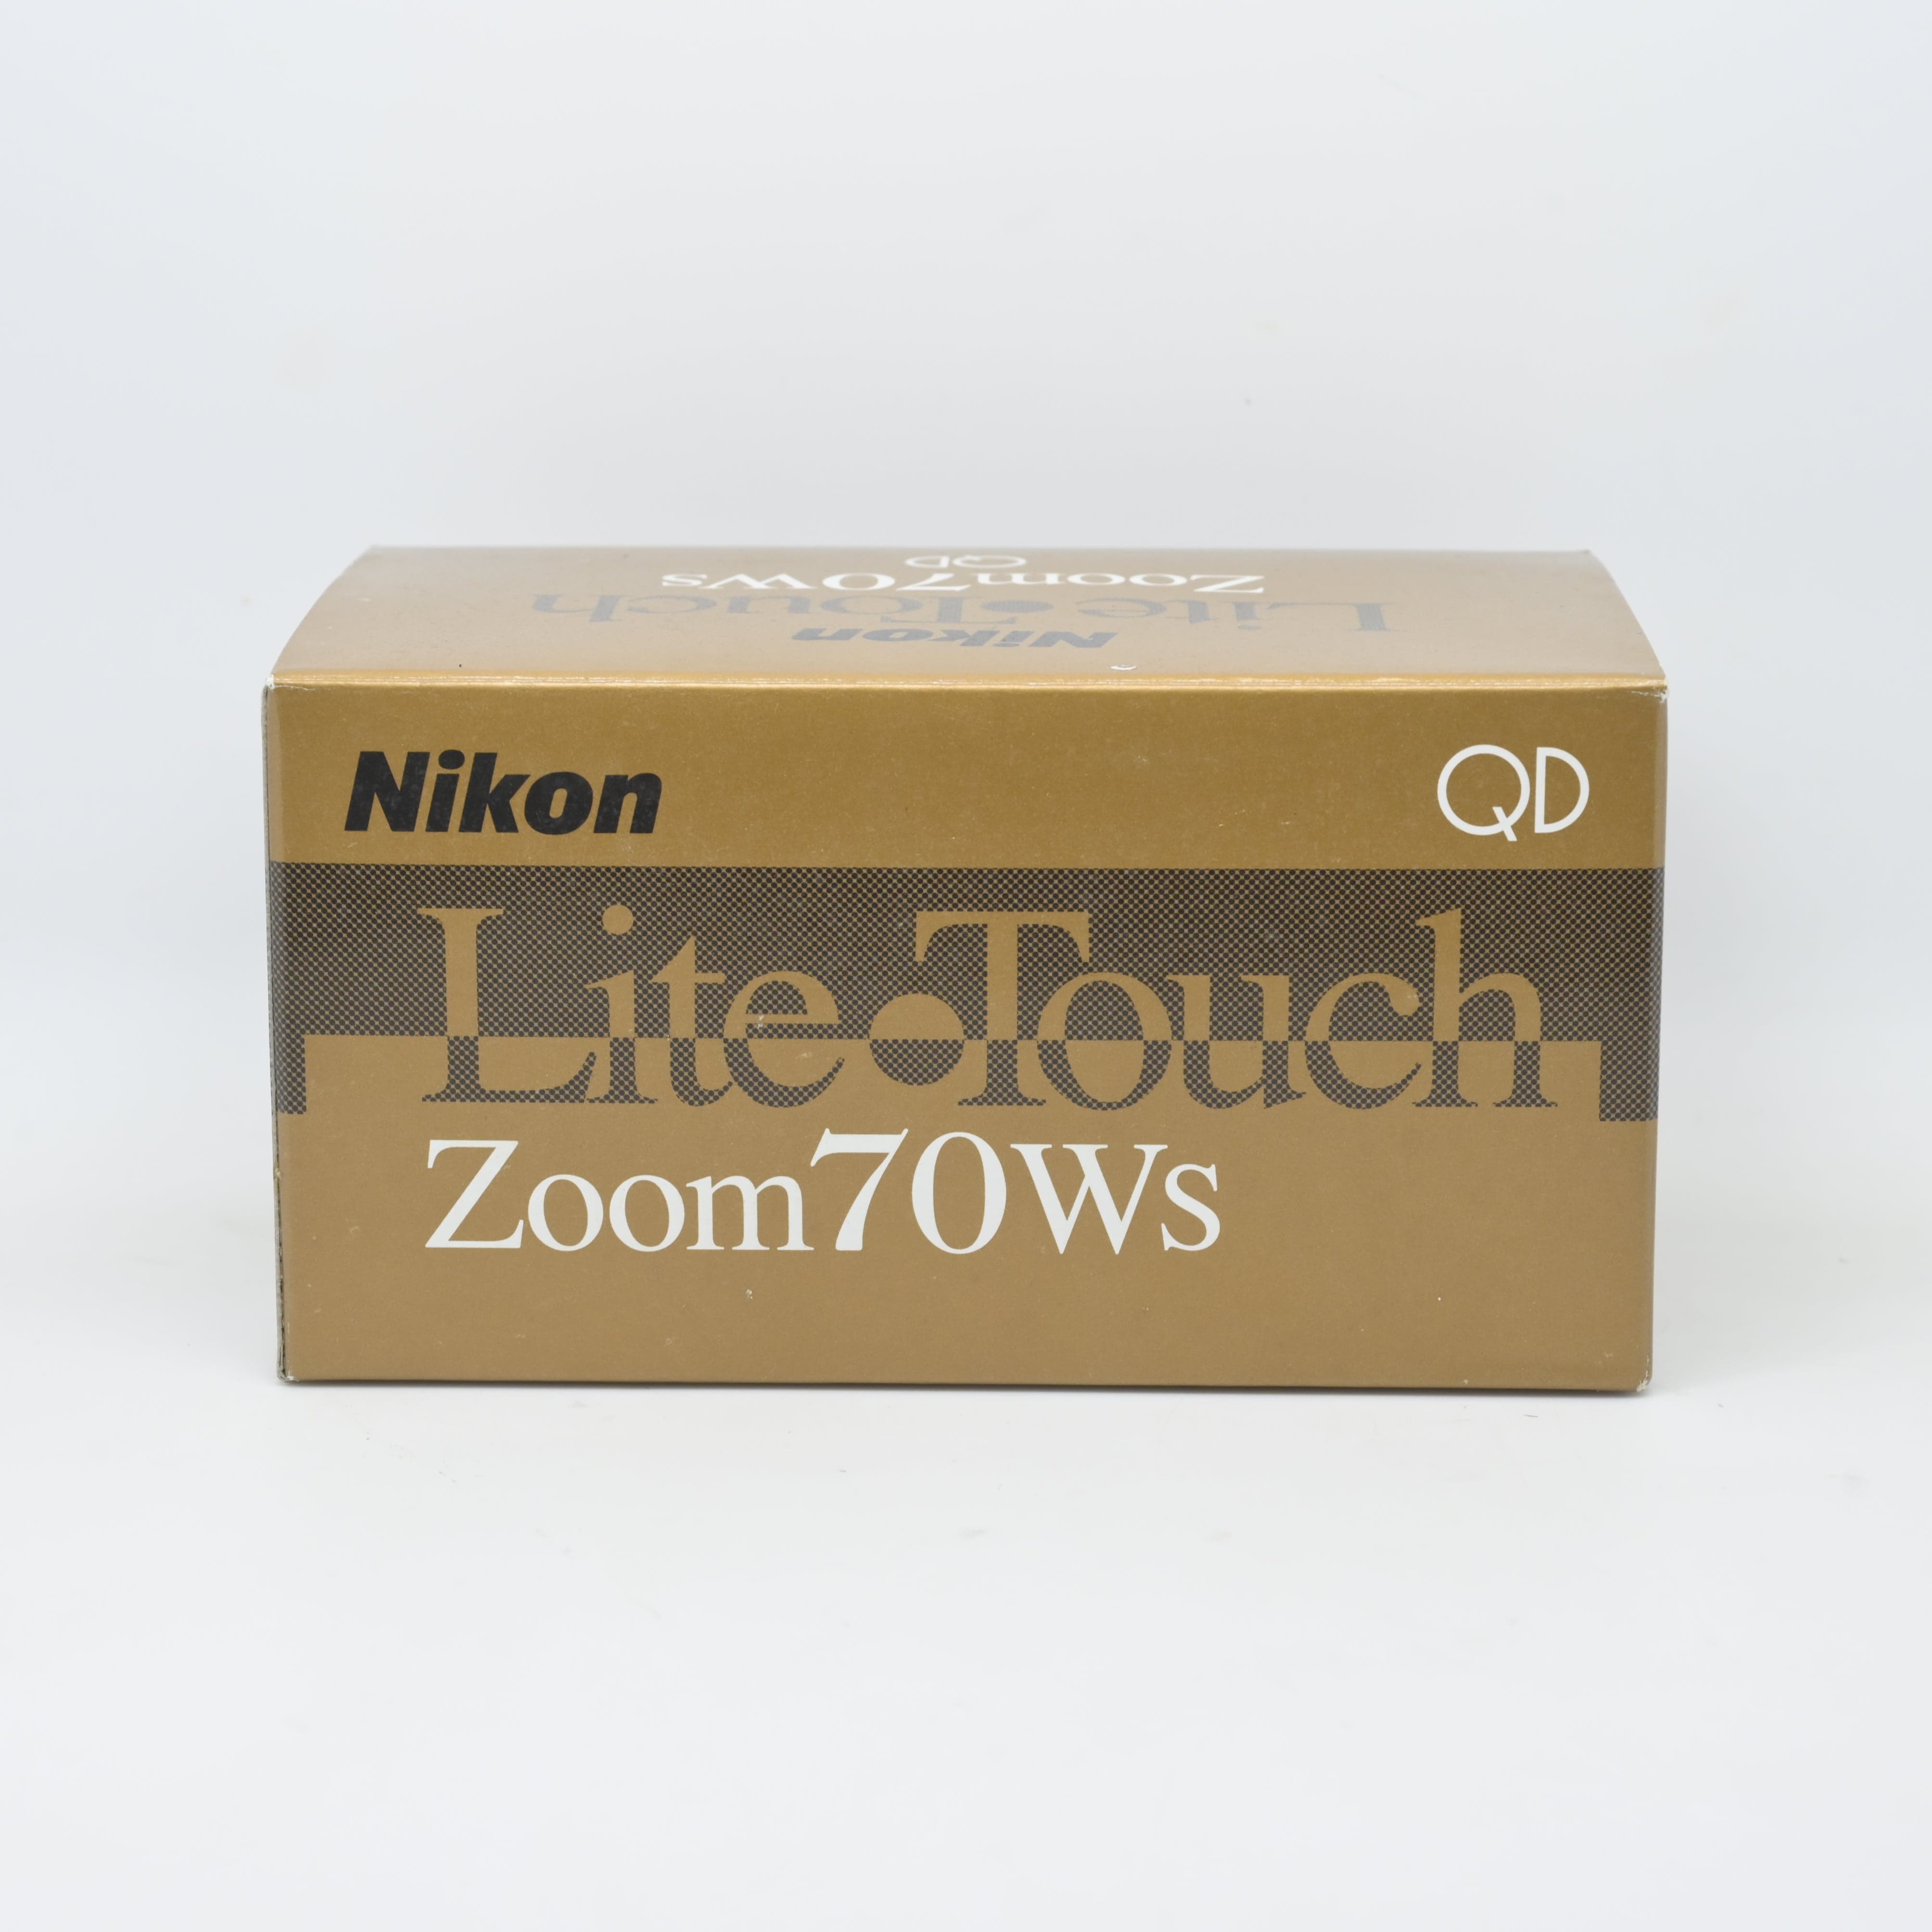 Nikon Lite Touch Zoom 70WS QD (New Old Stock Box Set) – Film 